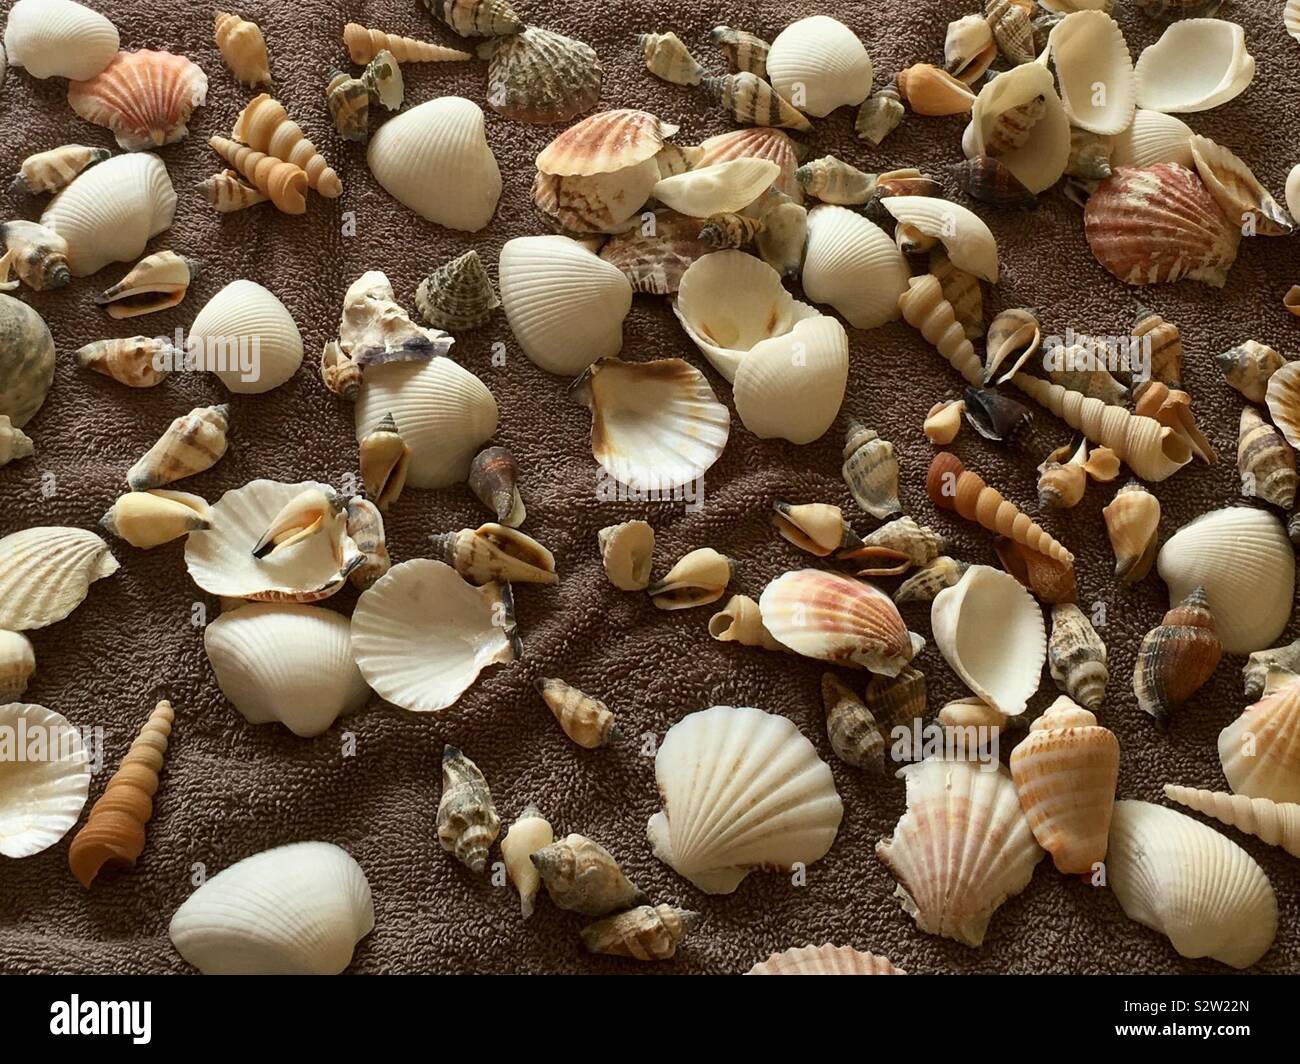 Muscheln auf einem braunen Strandtuch - UK Strand Muscheln Stockfoto